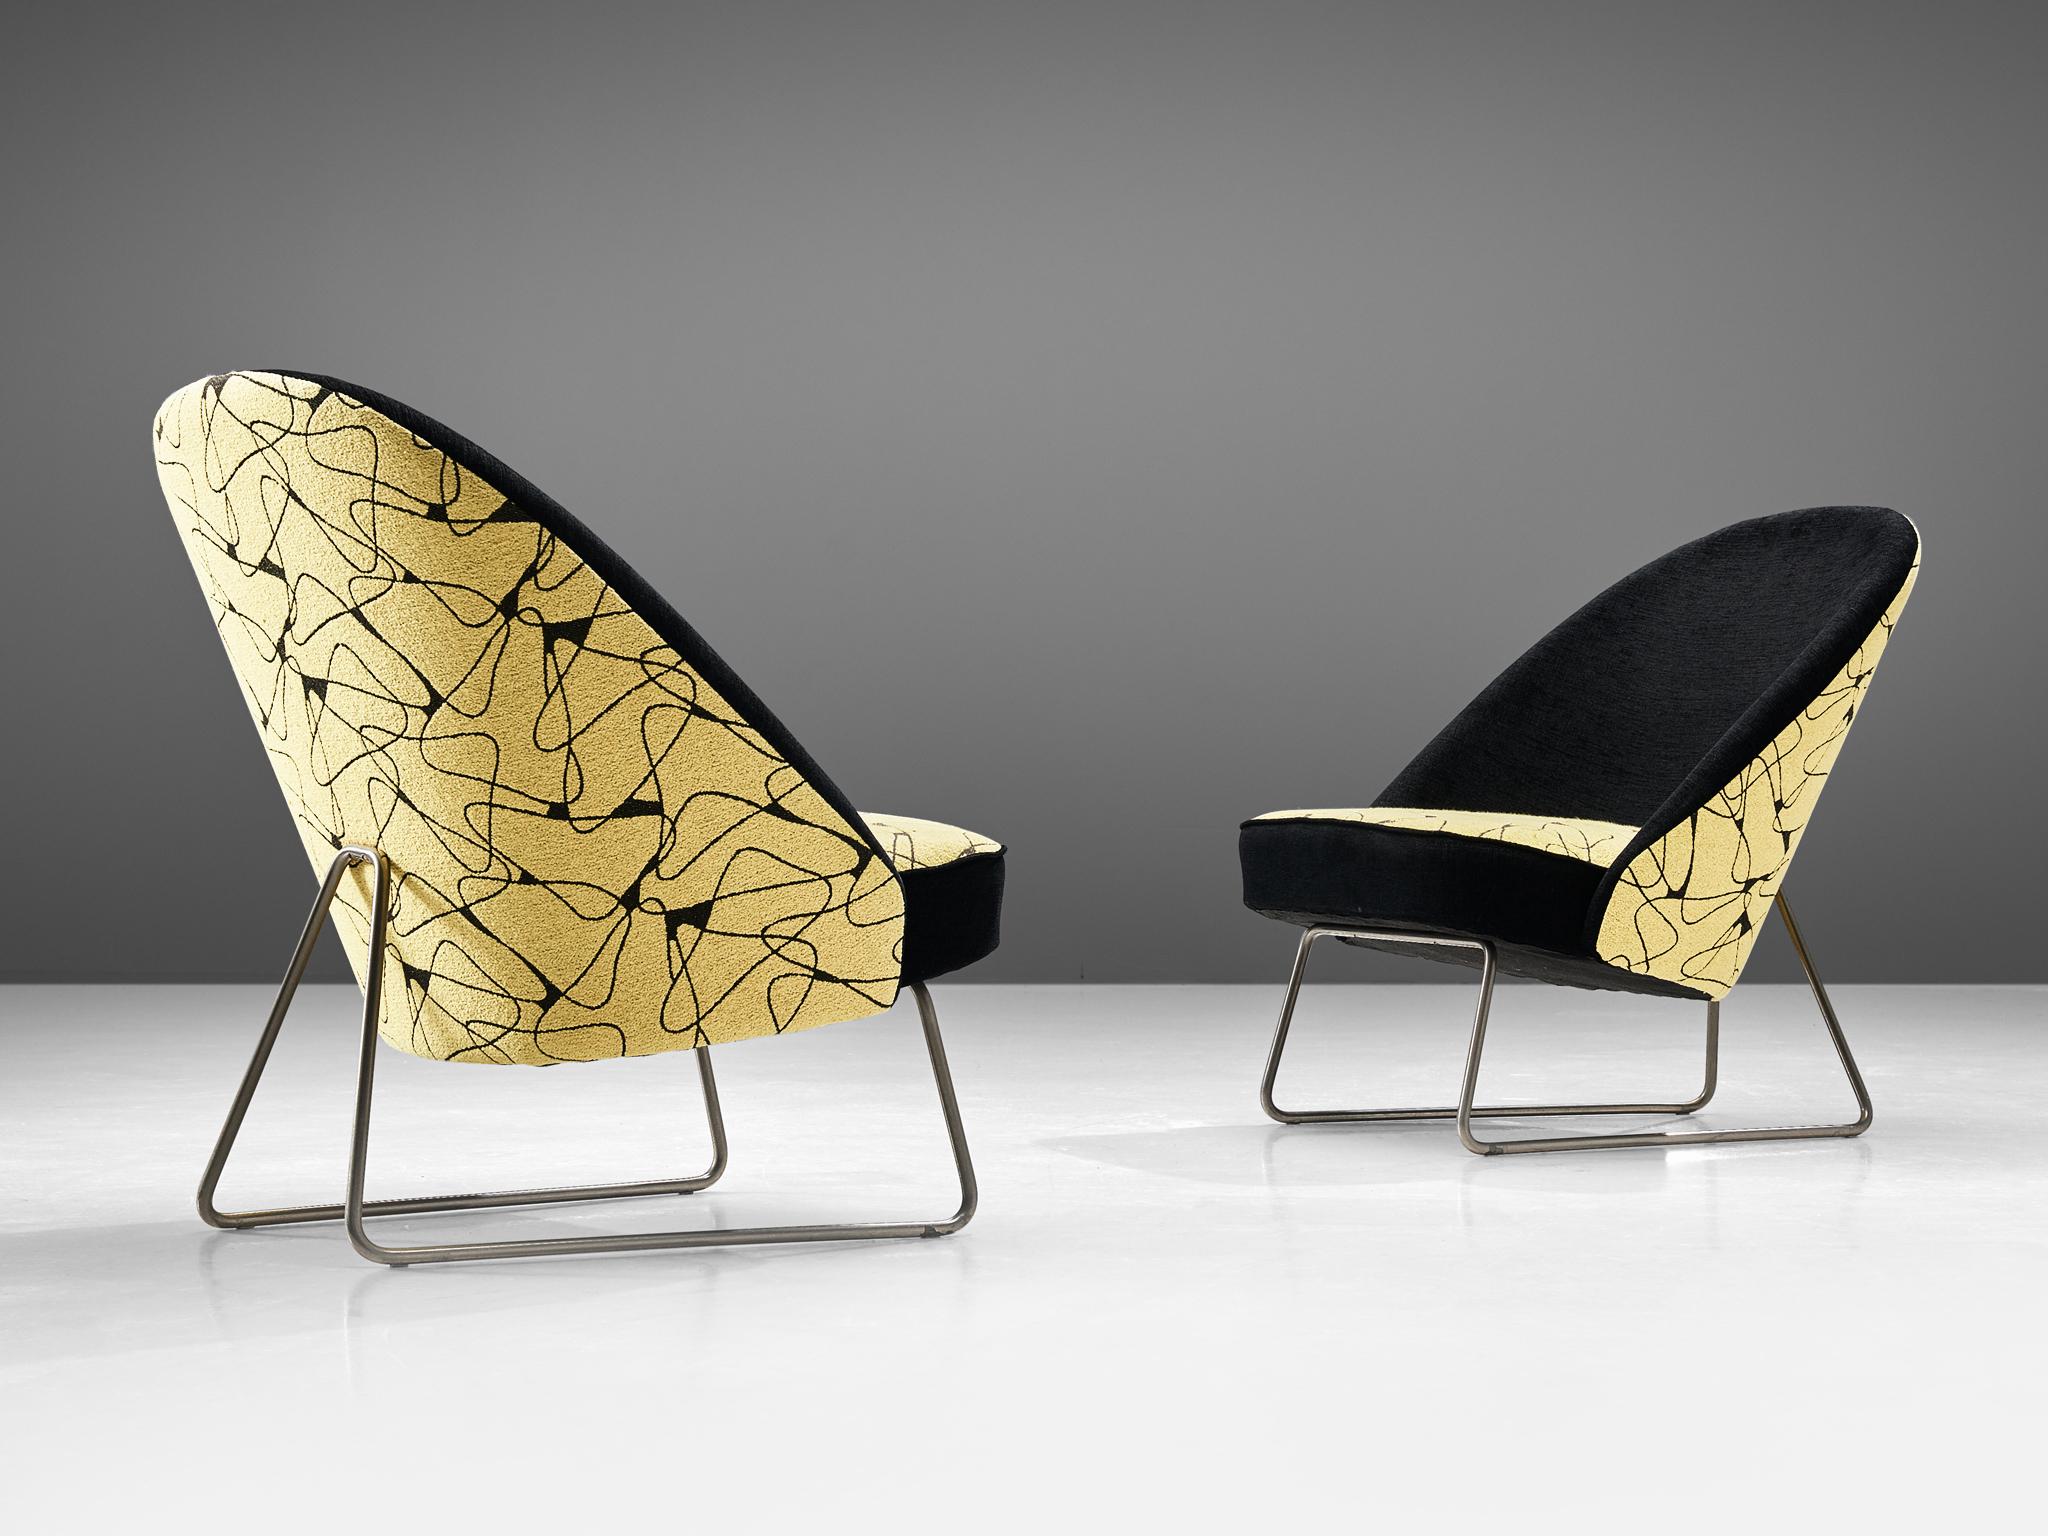 Theo Ruth für Artifort, Paar Sessel Modell 115, Metall, Stoff, Niederlande, Entwurf 1958 

Ein Paar Sessel mit Metallgestell, entworfen von Theo Ruth für die Firma Artifort. Die Stühle sind mit einem grafischen Webstoff aus der Mitte des